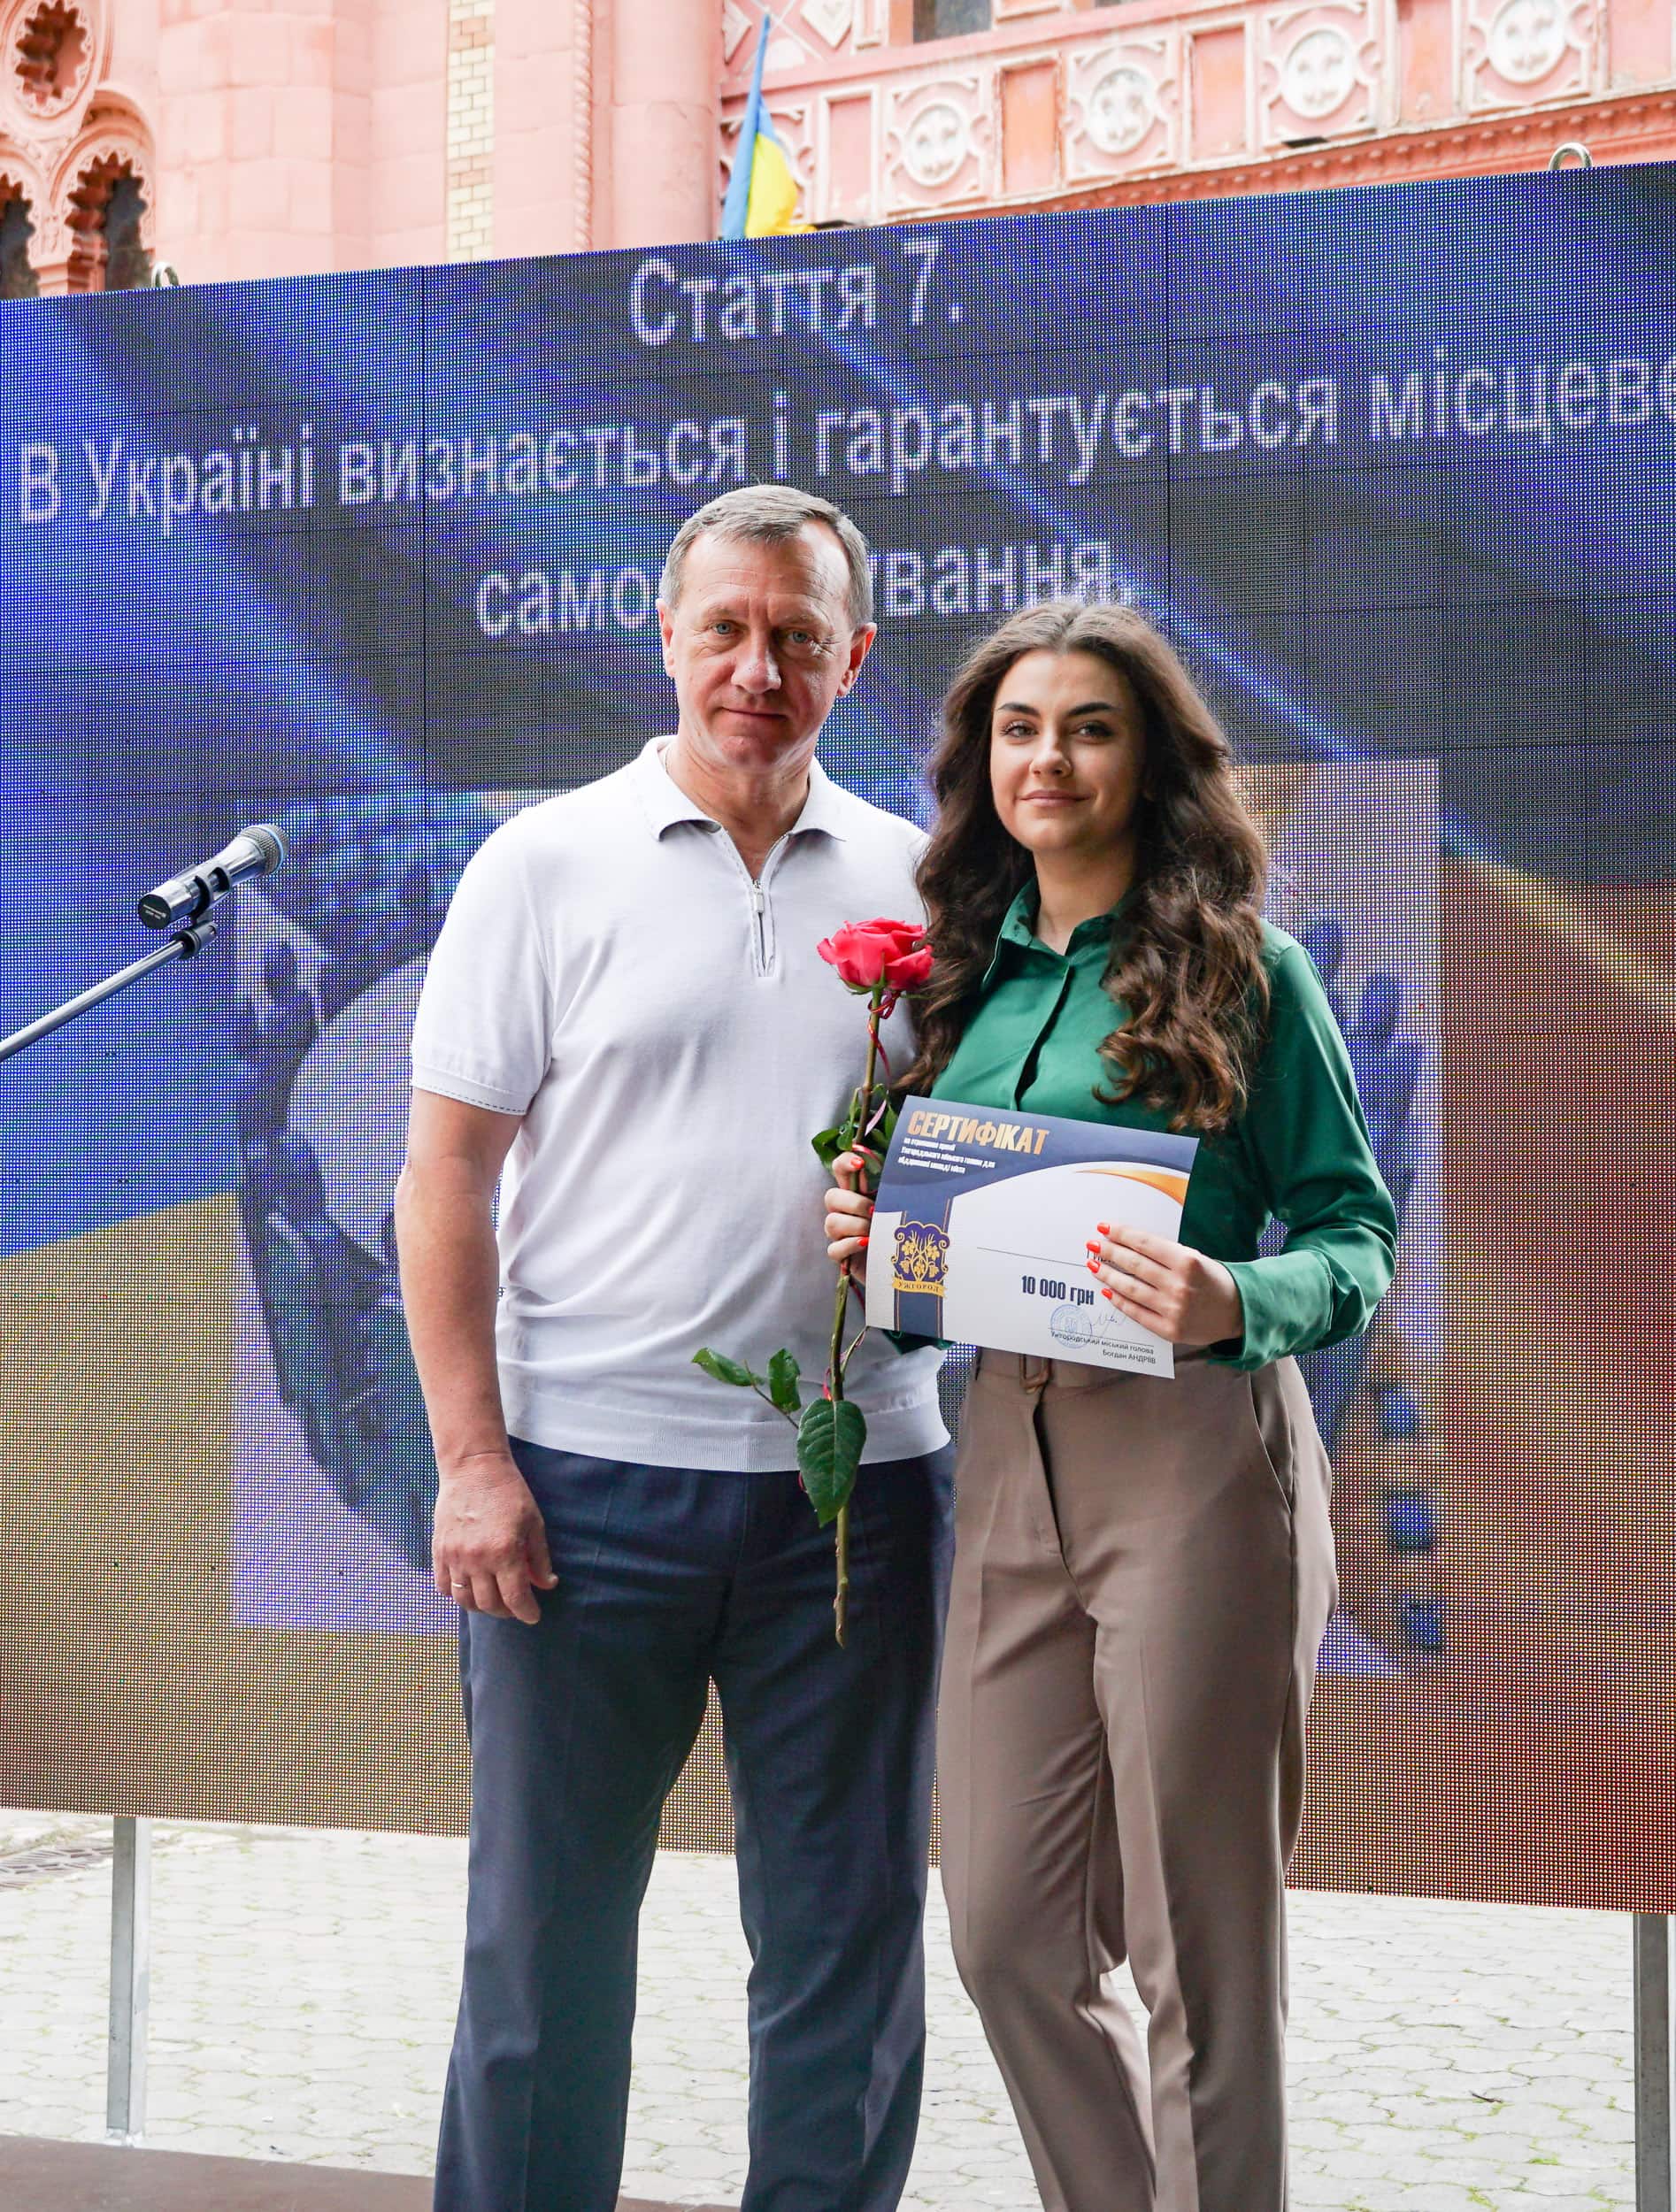 Богдан Андріїв вручив сертифікати по 10 000 гривень переможцям премії міського голови для обдарованої молоді міста